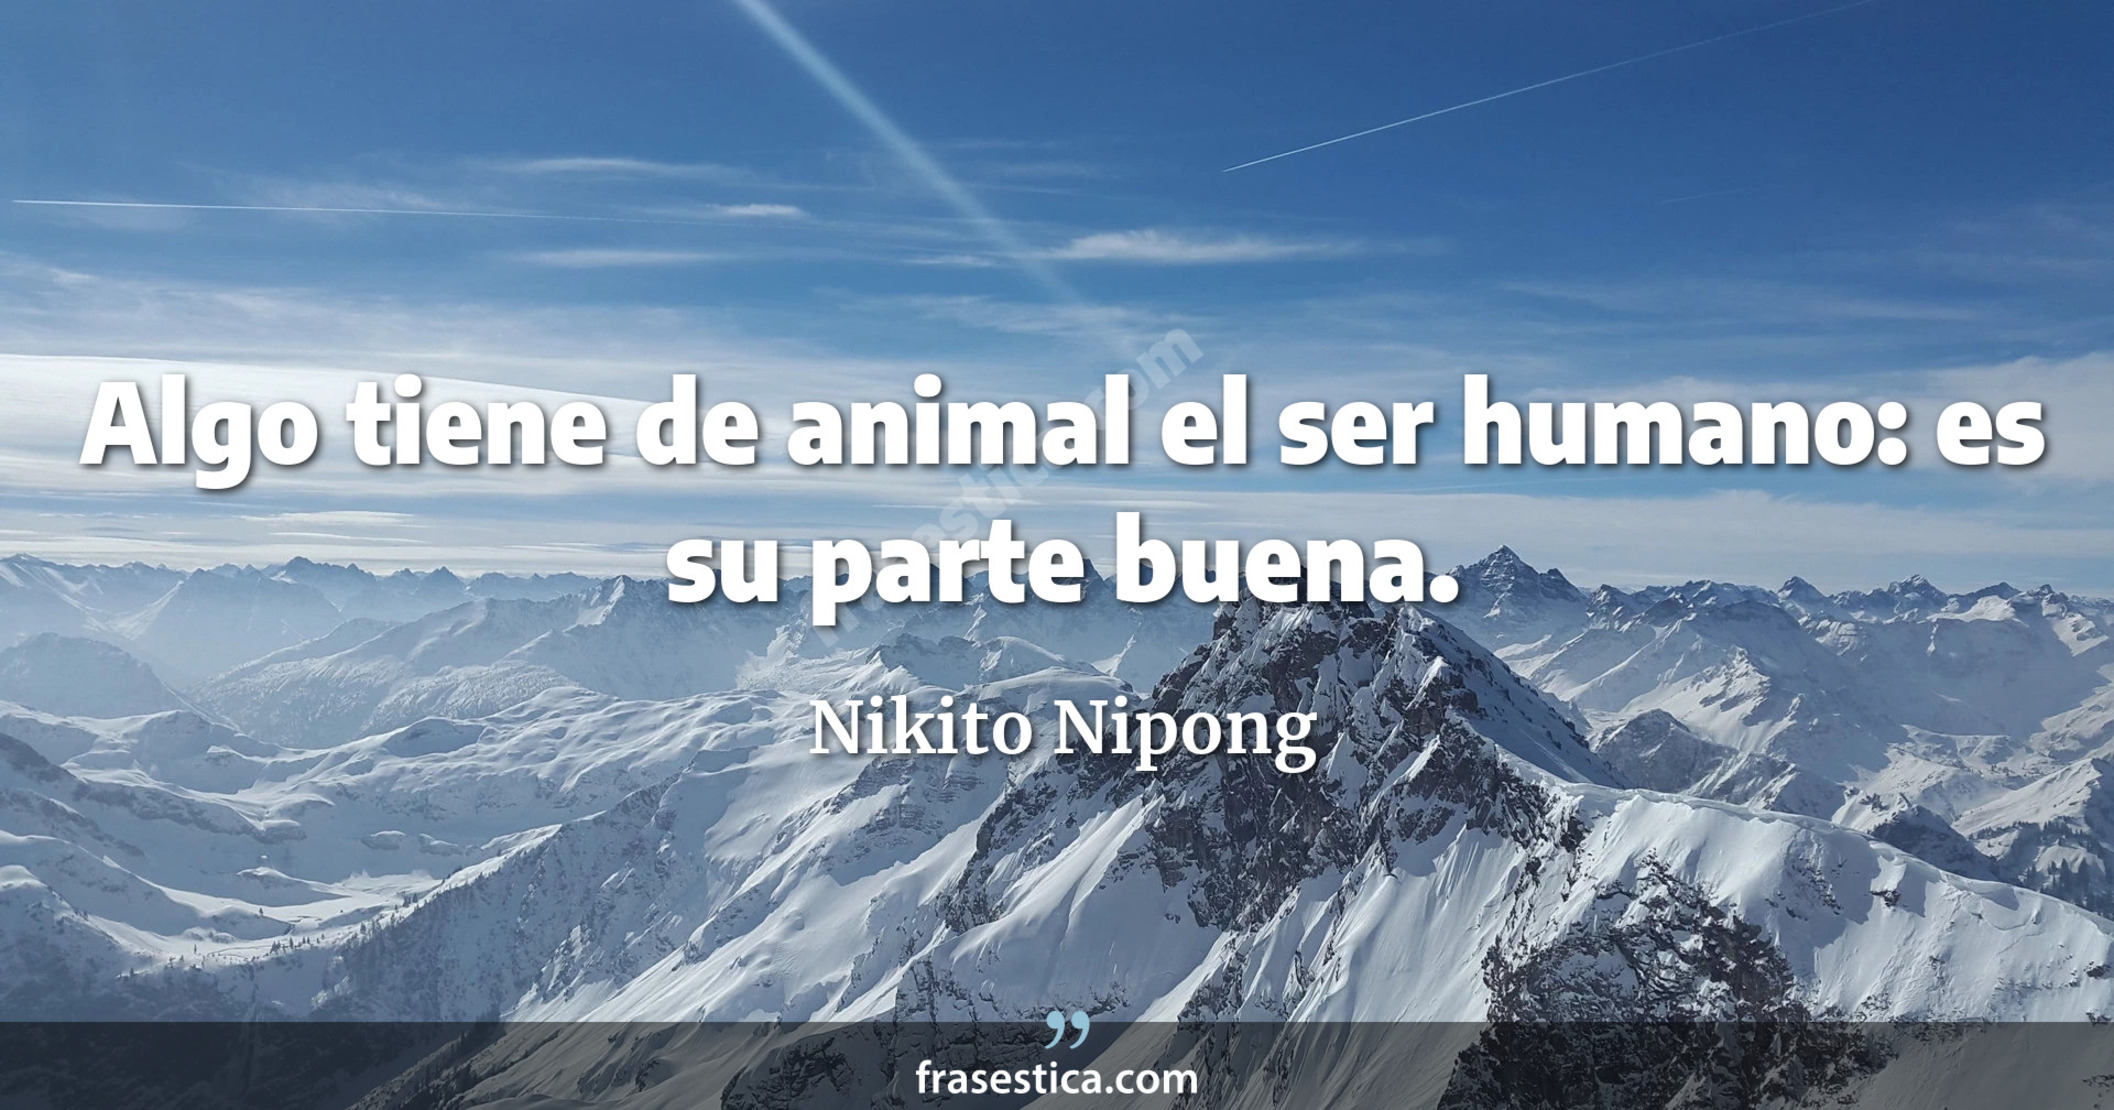 Algo tiene de animal el ser humano: es su parte buena. - Nikito Nipong